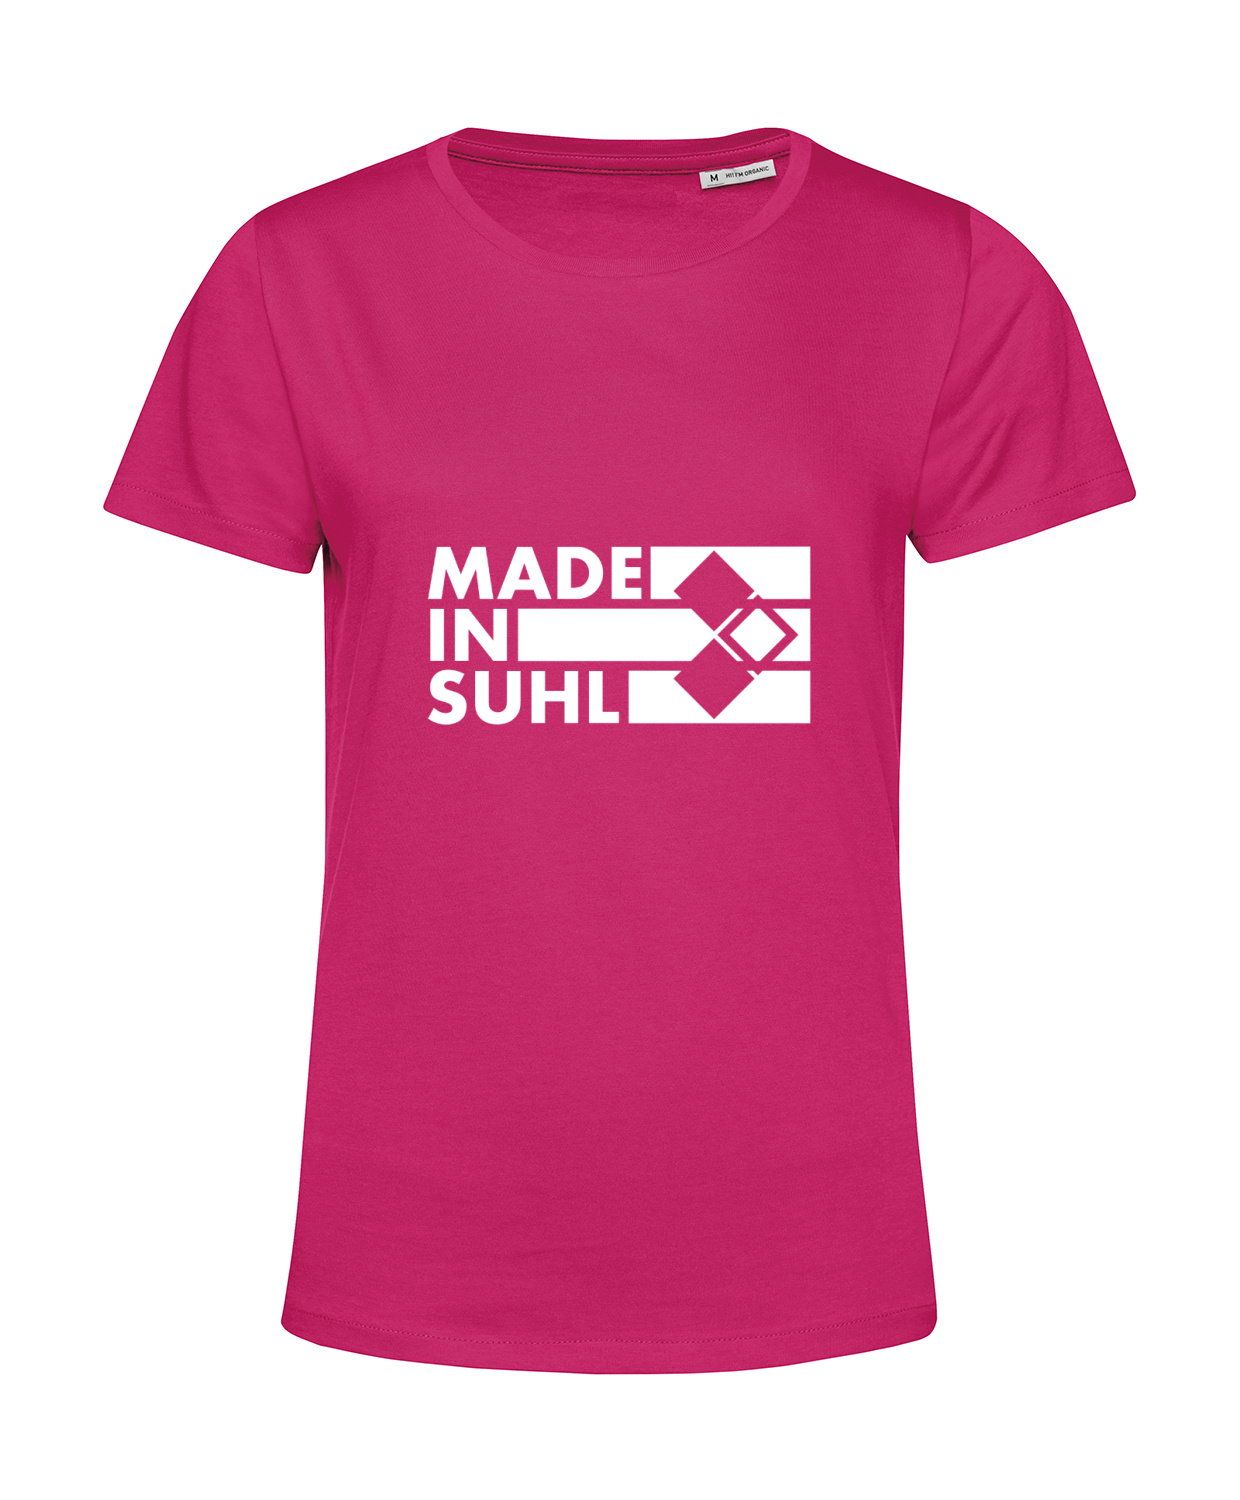 Nachhaltiges T-Shirt Damen 2Takter - Made in Suhl